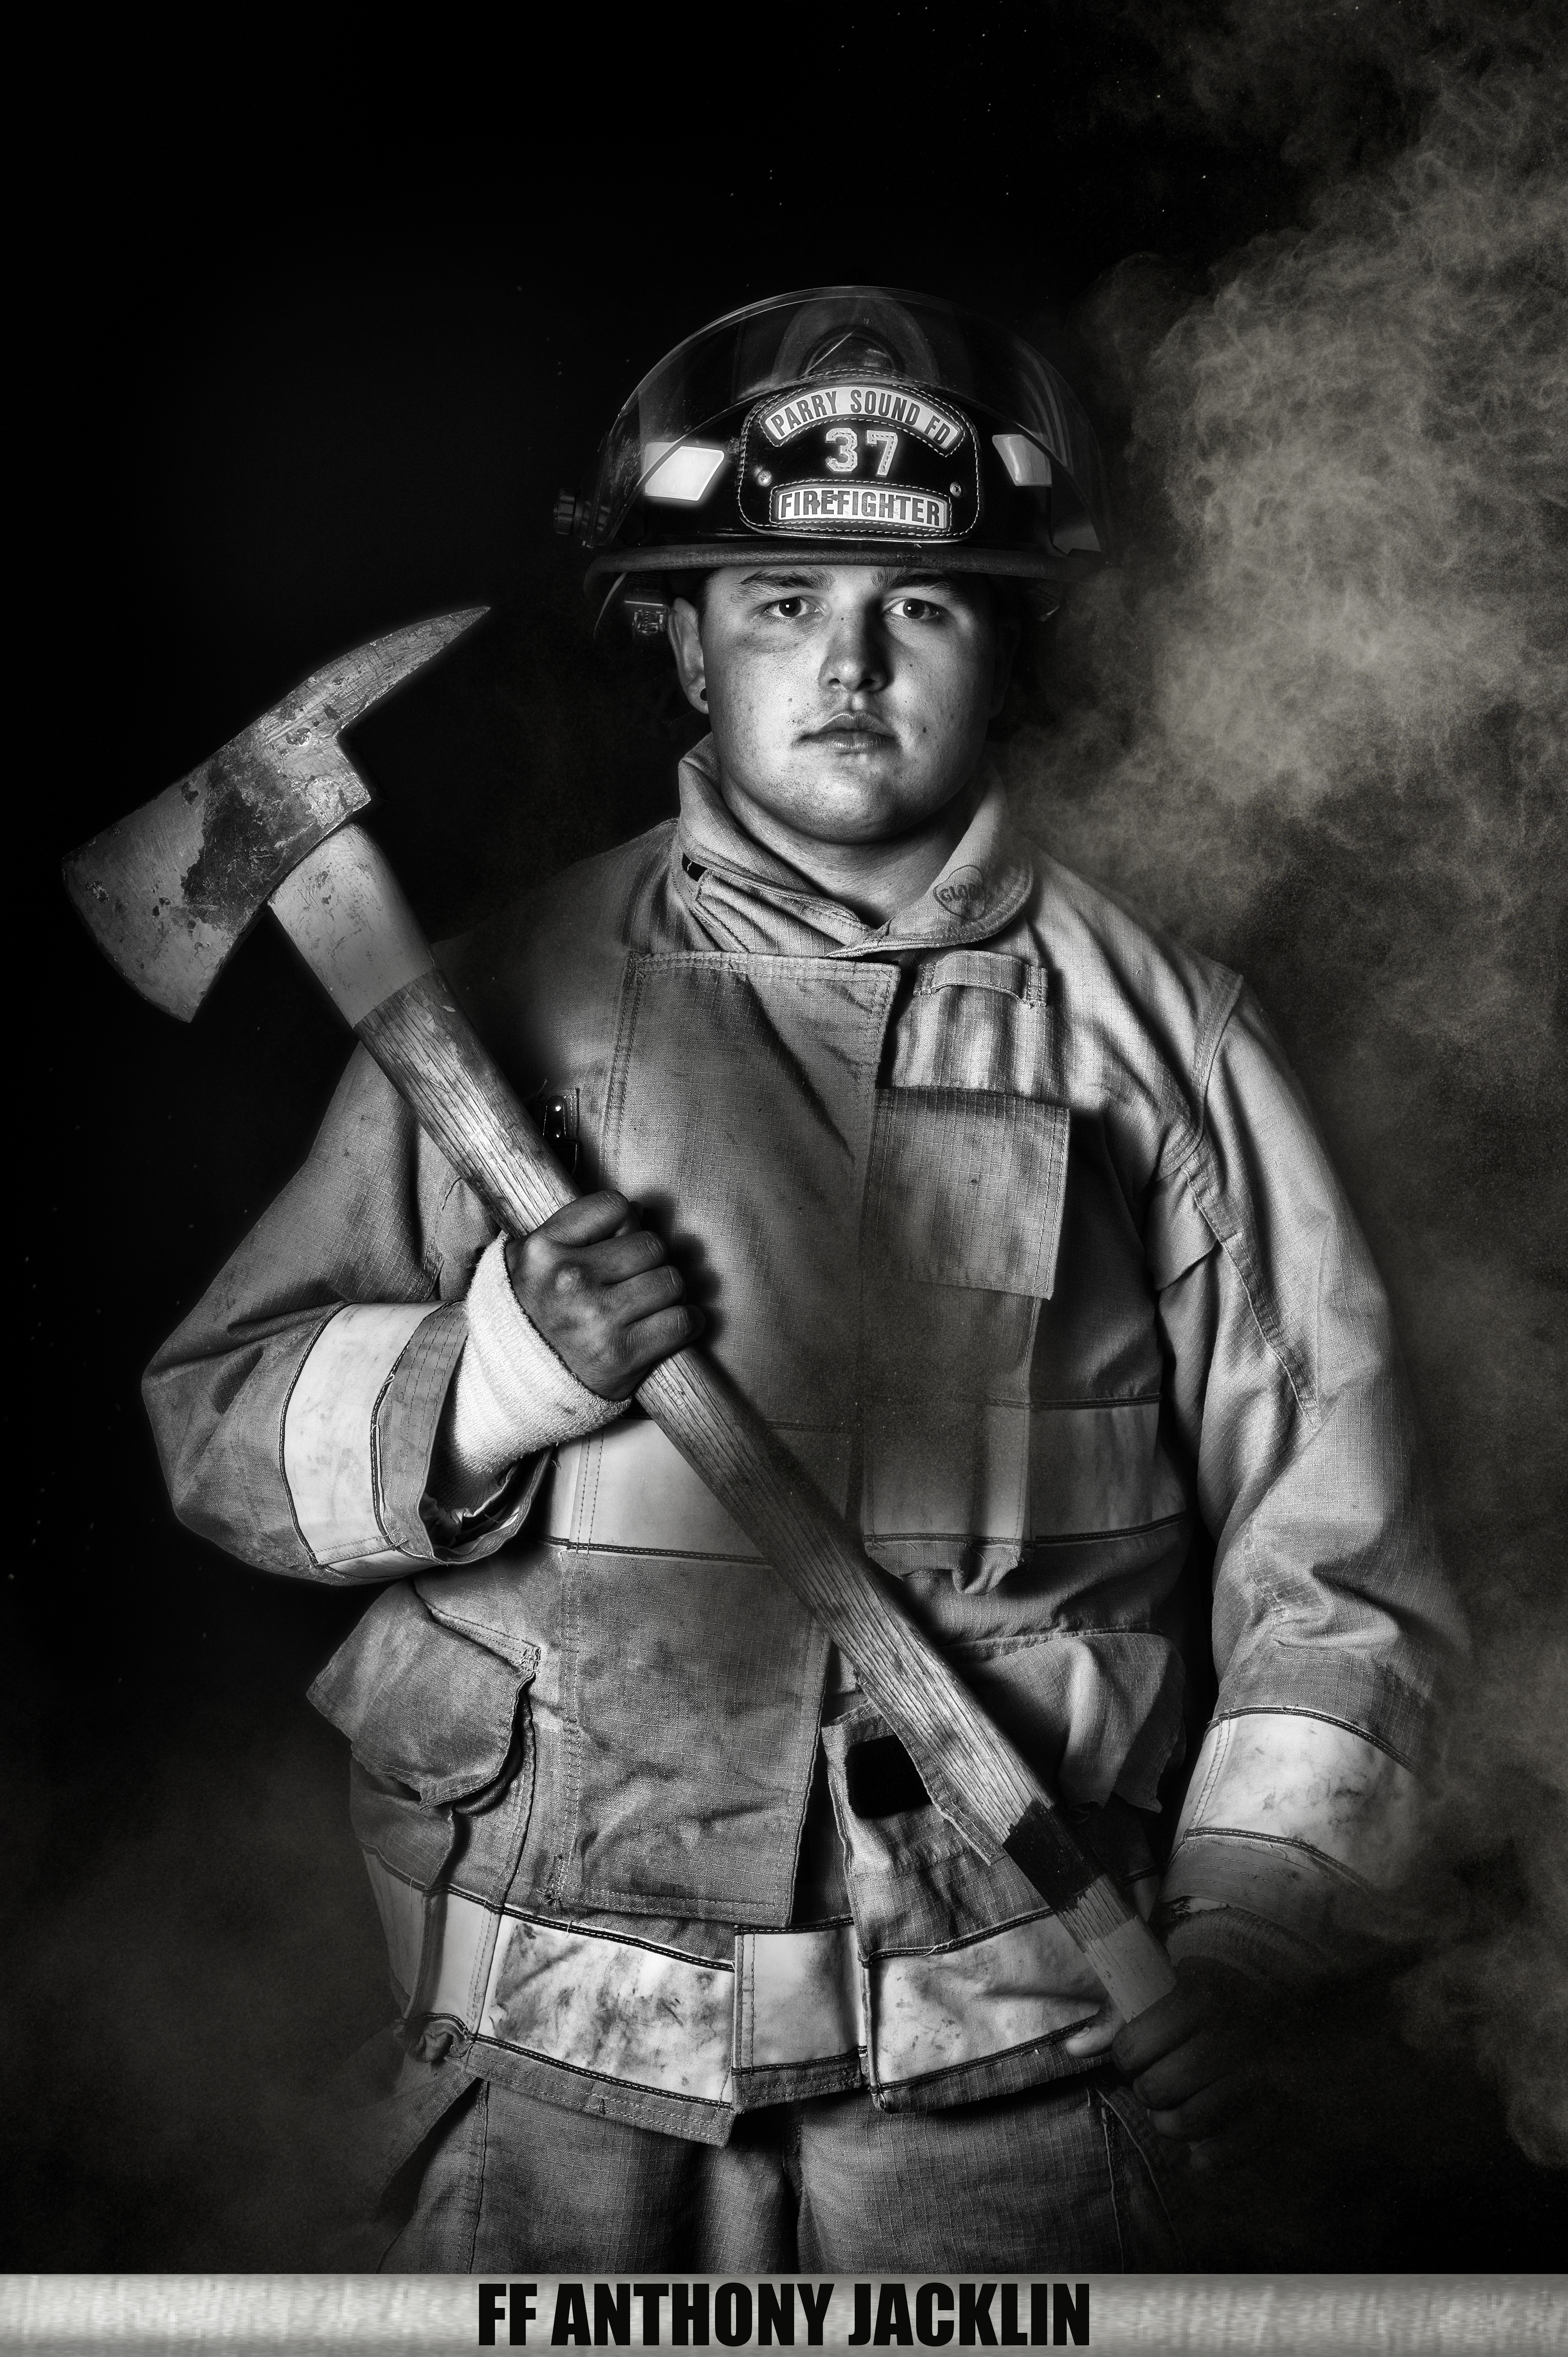 Firefighter Anthony Jacklin